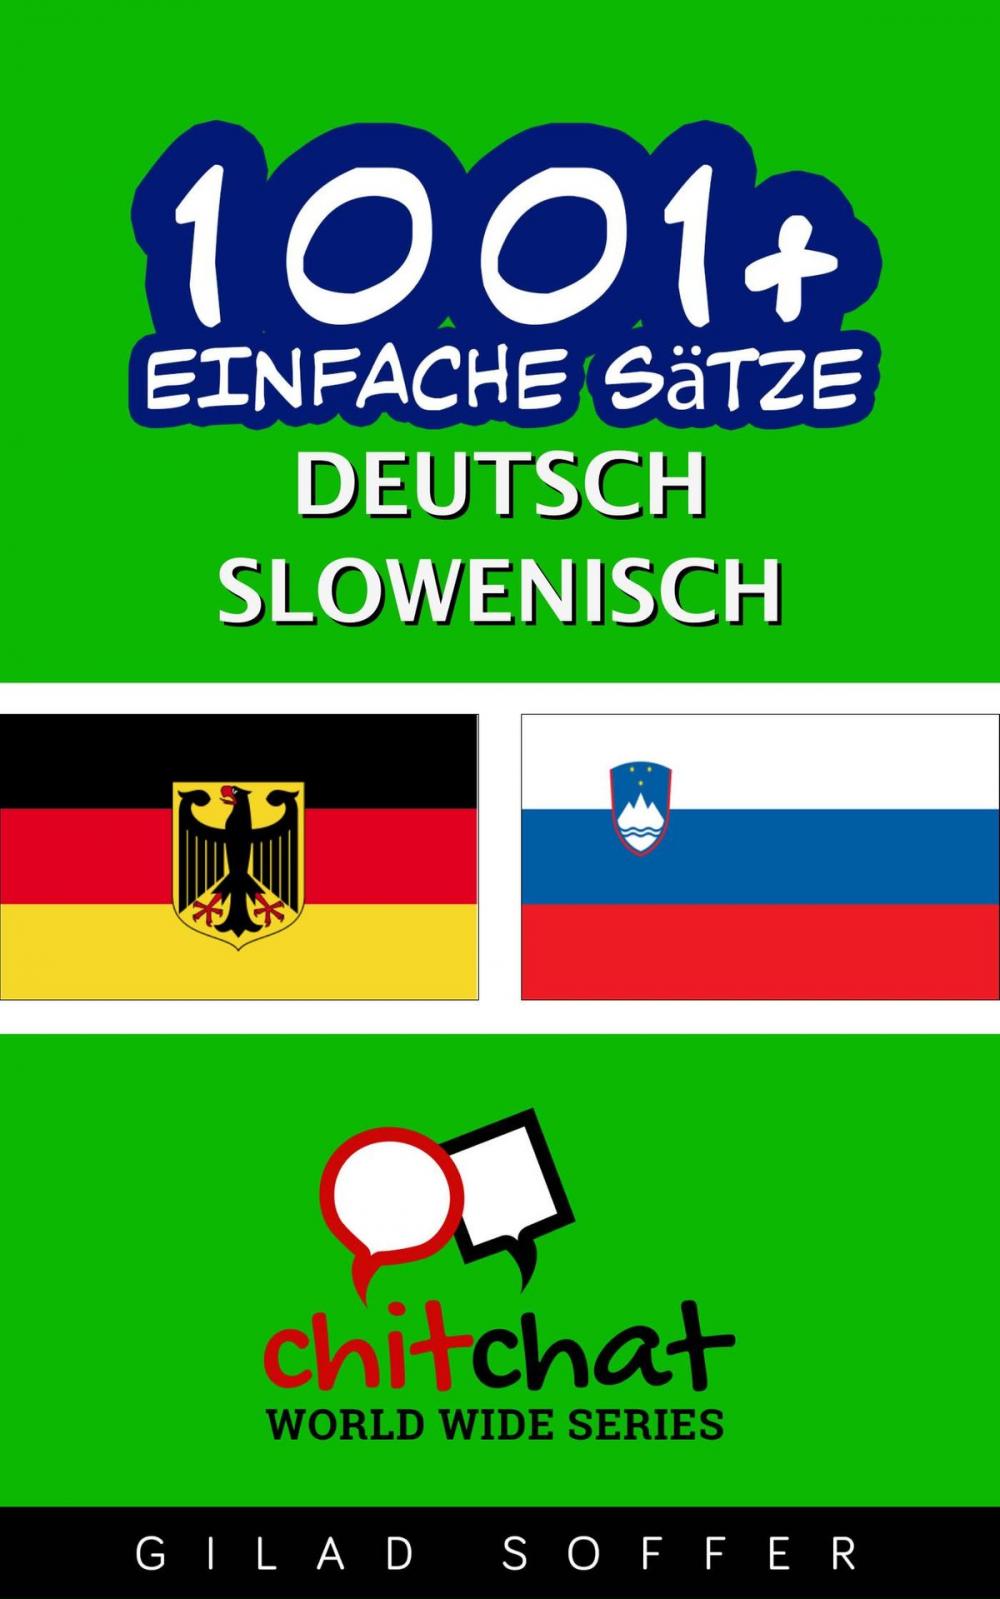 Big bigCover of 1001+ Einfache Sätze Deutsch - Slowenisch